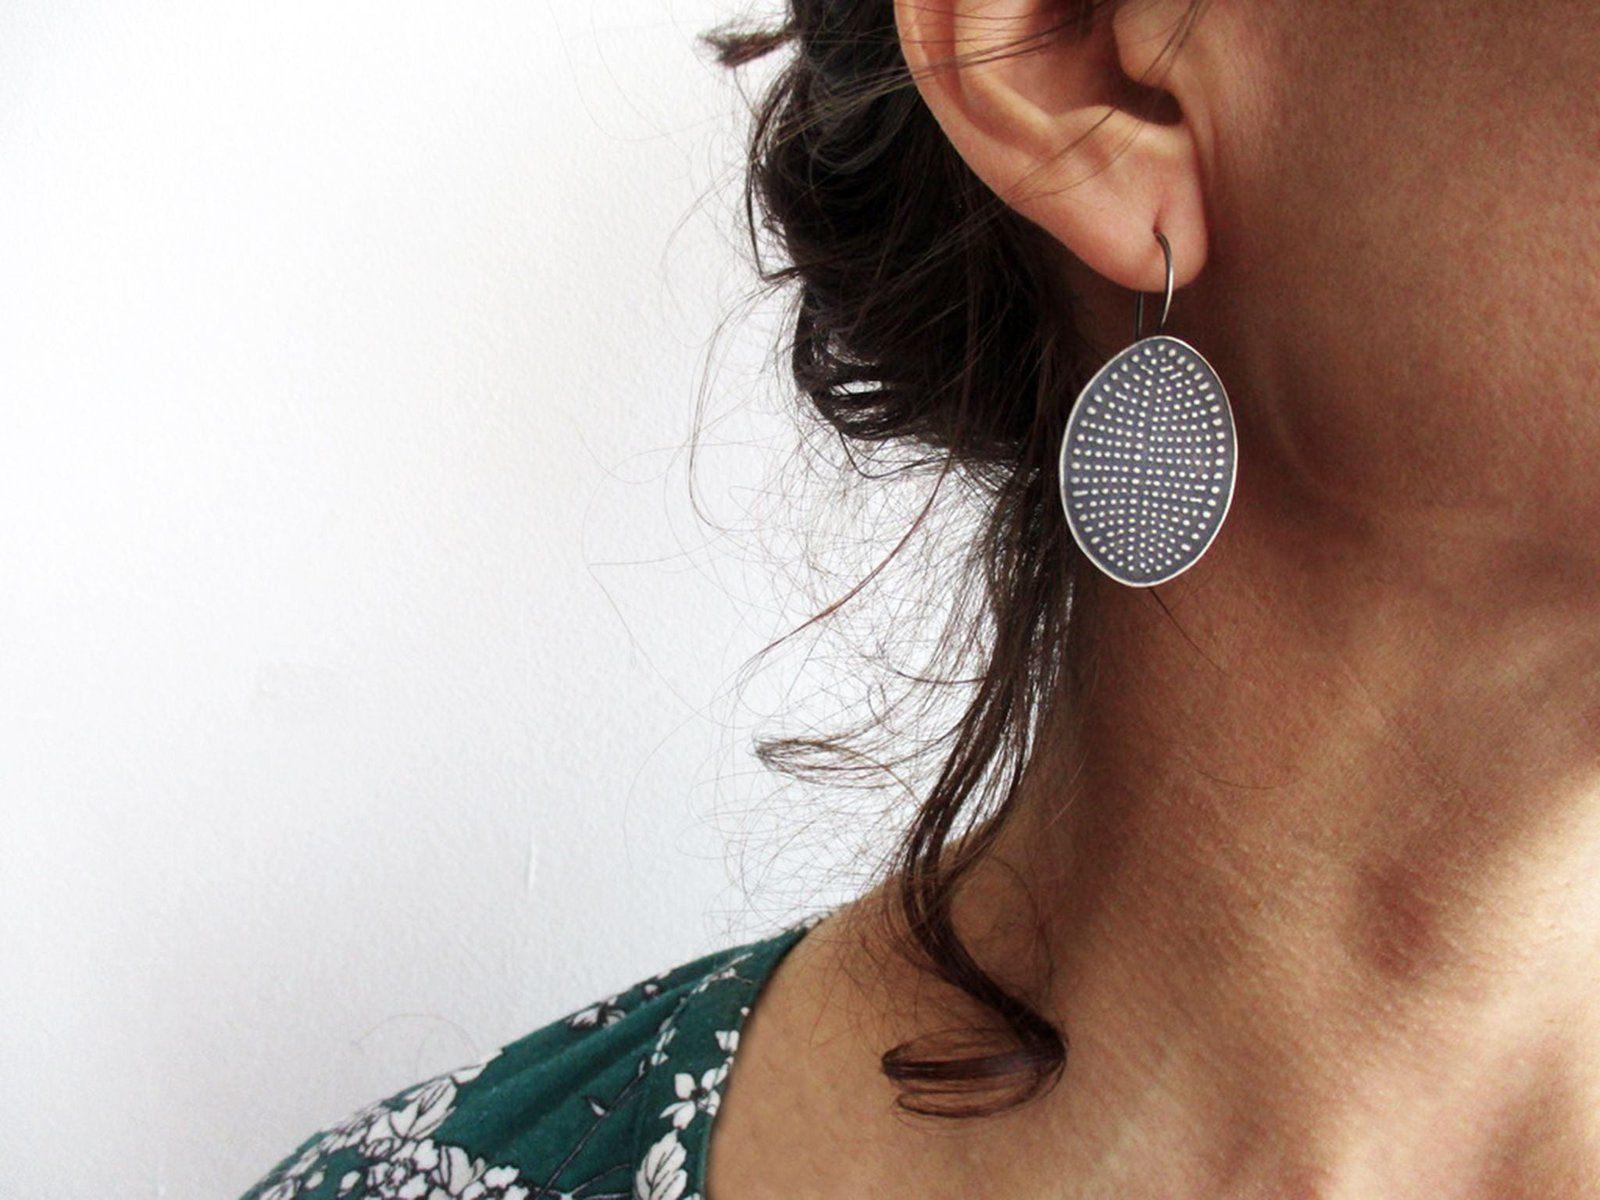 Relief Silver Dangle Earrings - Everyday Earrings | KimyaJoyas